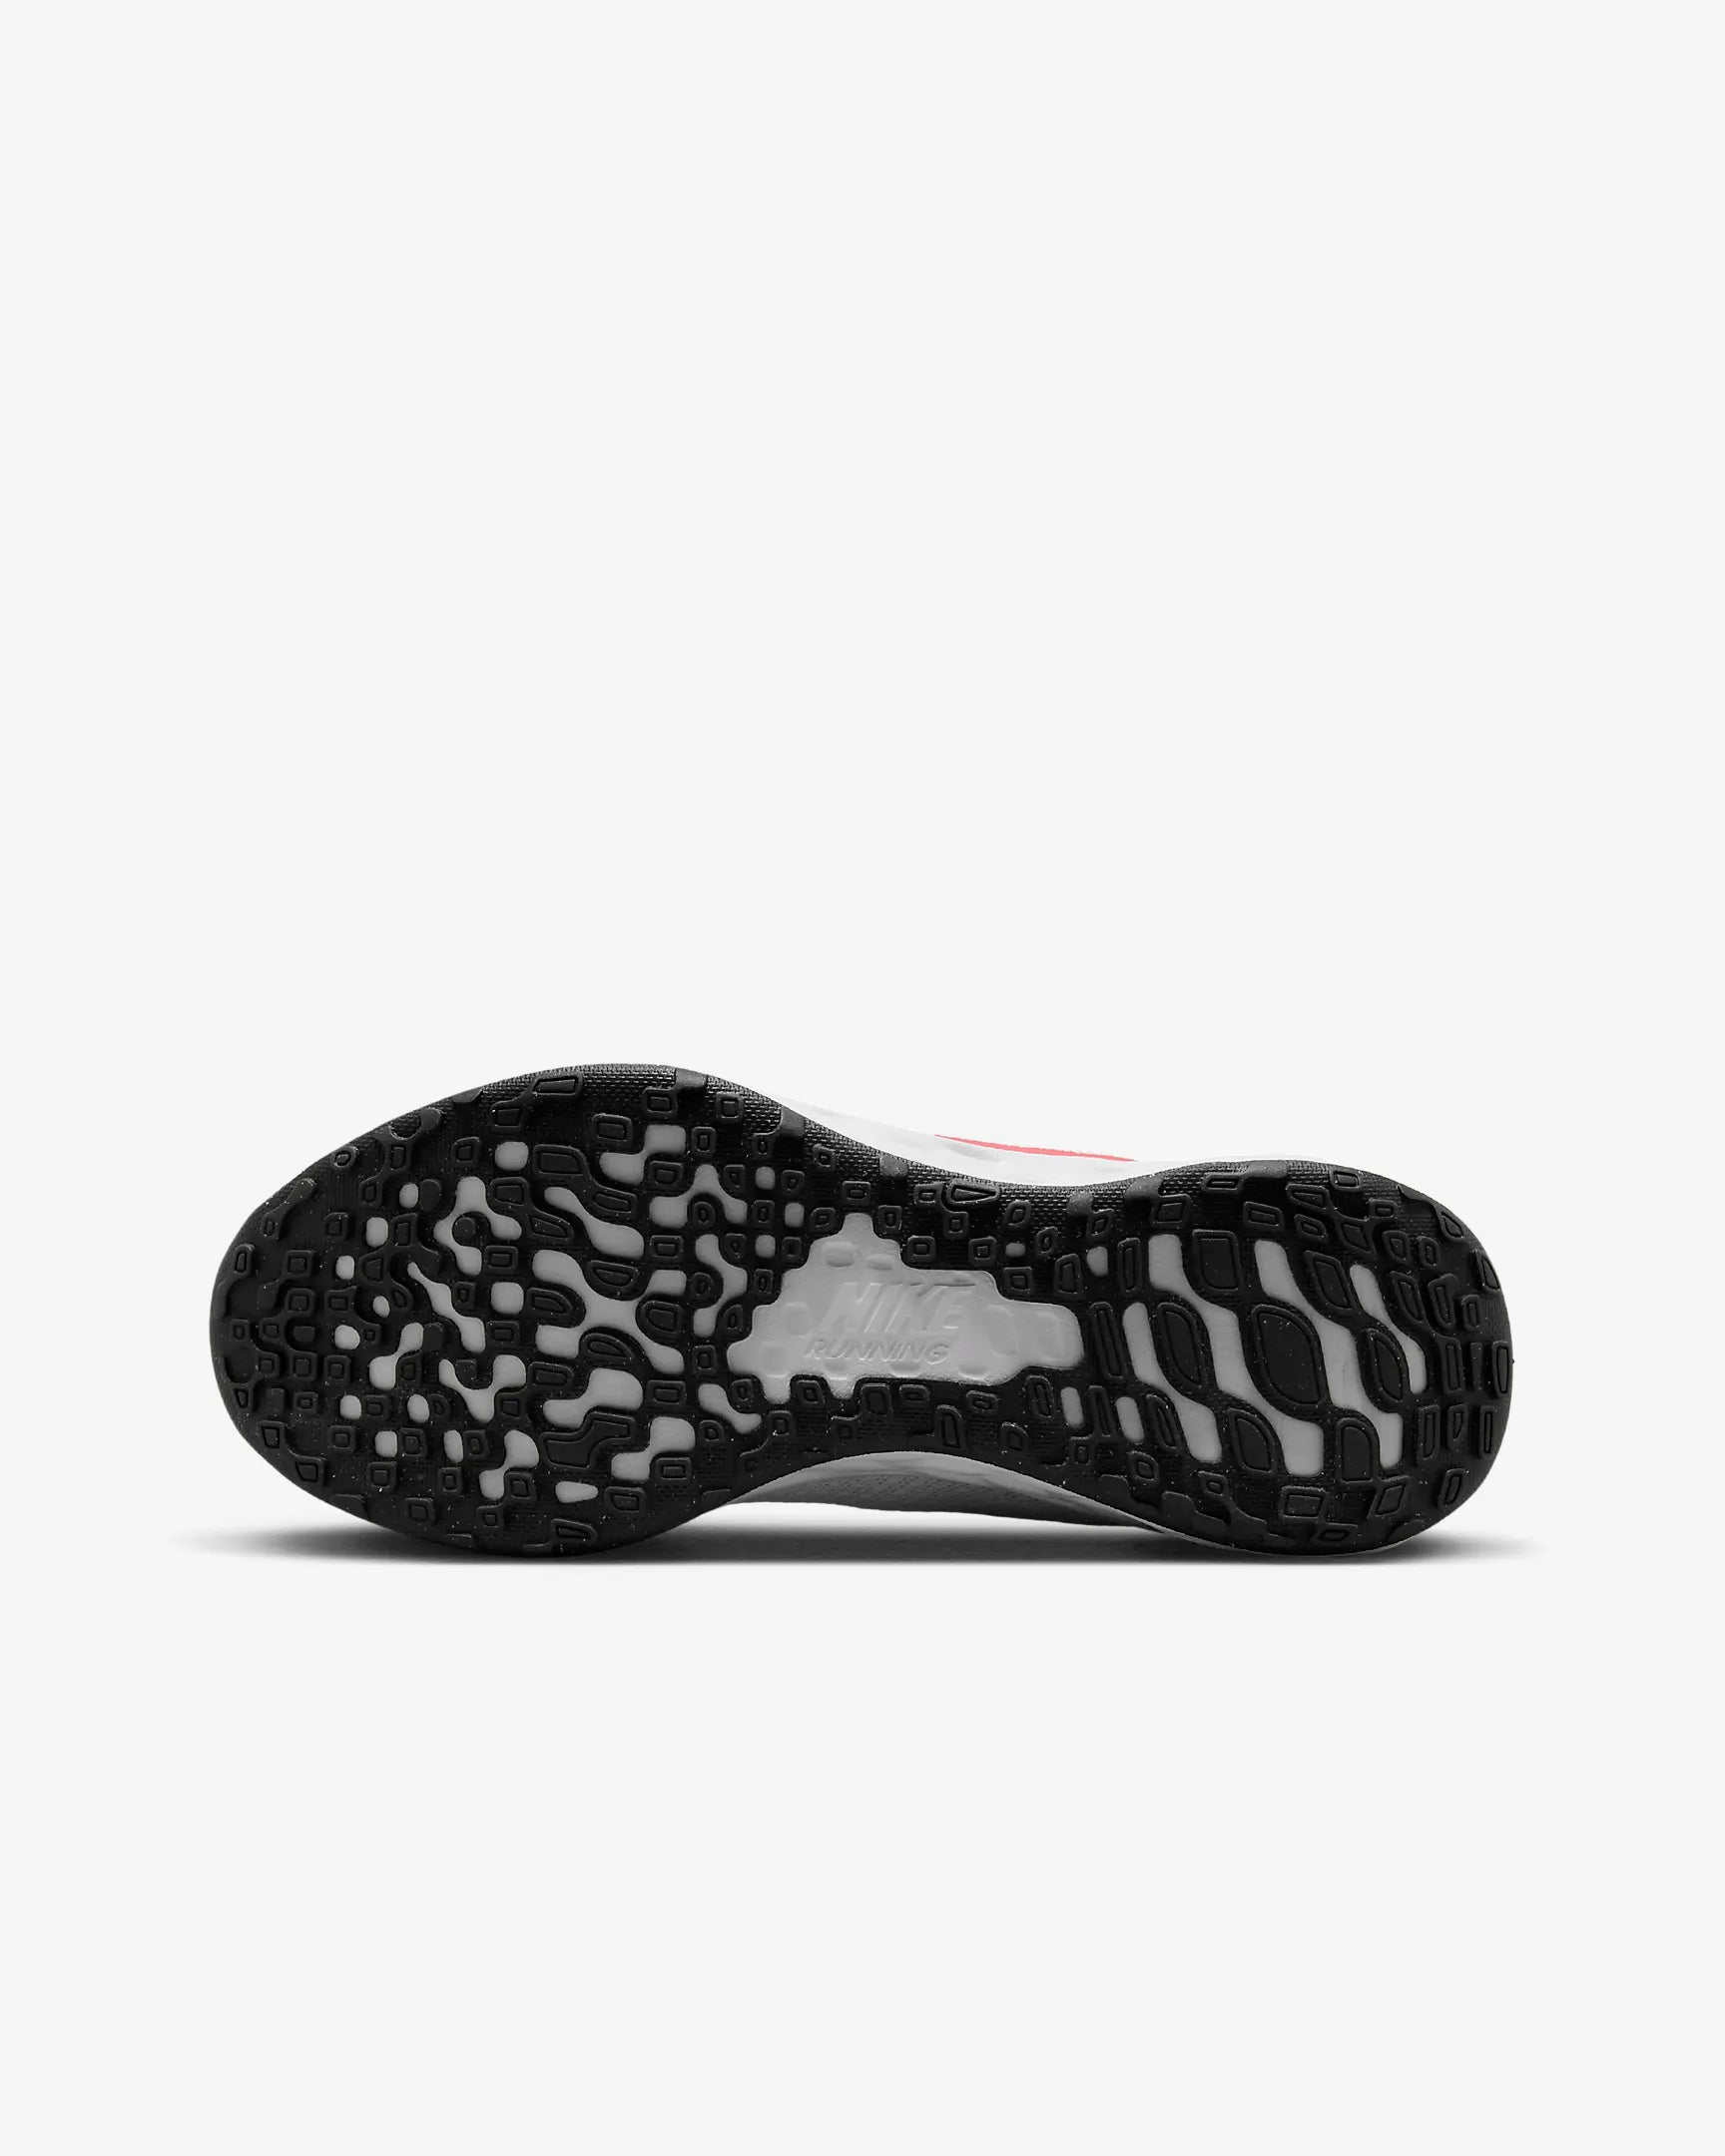 Nike Nike JUNIOR Revolution 6 Road WHITE/RED Running Shoes - INSPORT